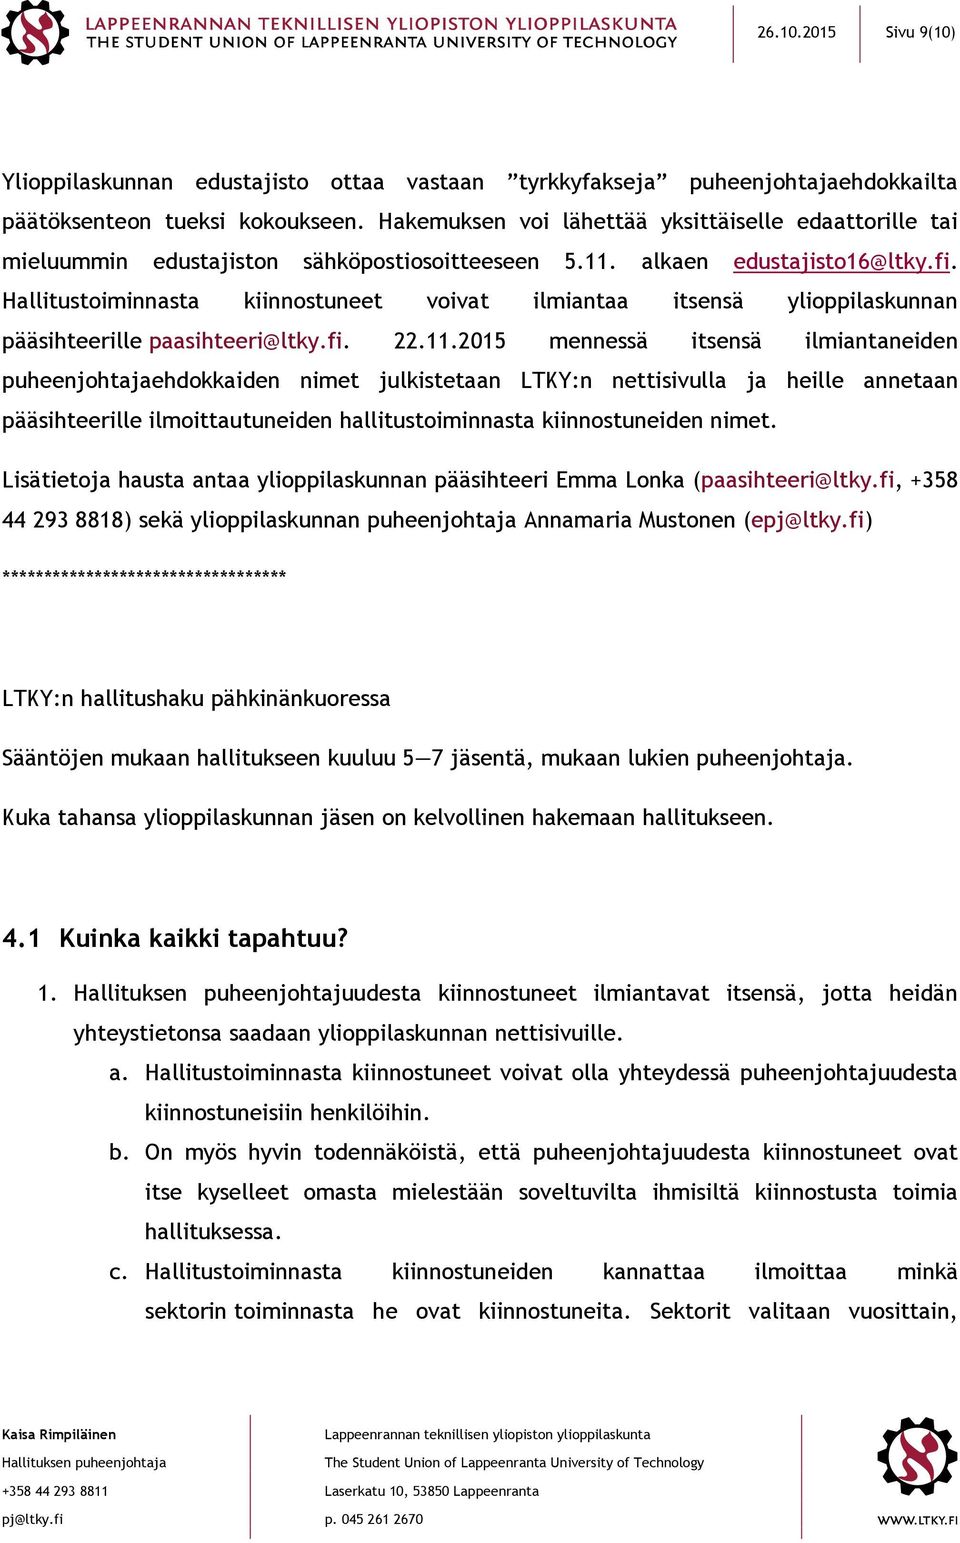 Hallitustoiminnasta kiinnostuneet voivat ilmiantaa itsensä ylioppilaskunnan pääsihteerille paasihteeri@ltky.fi. 22.11.